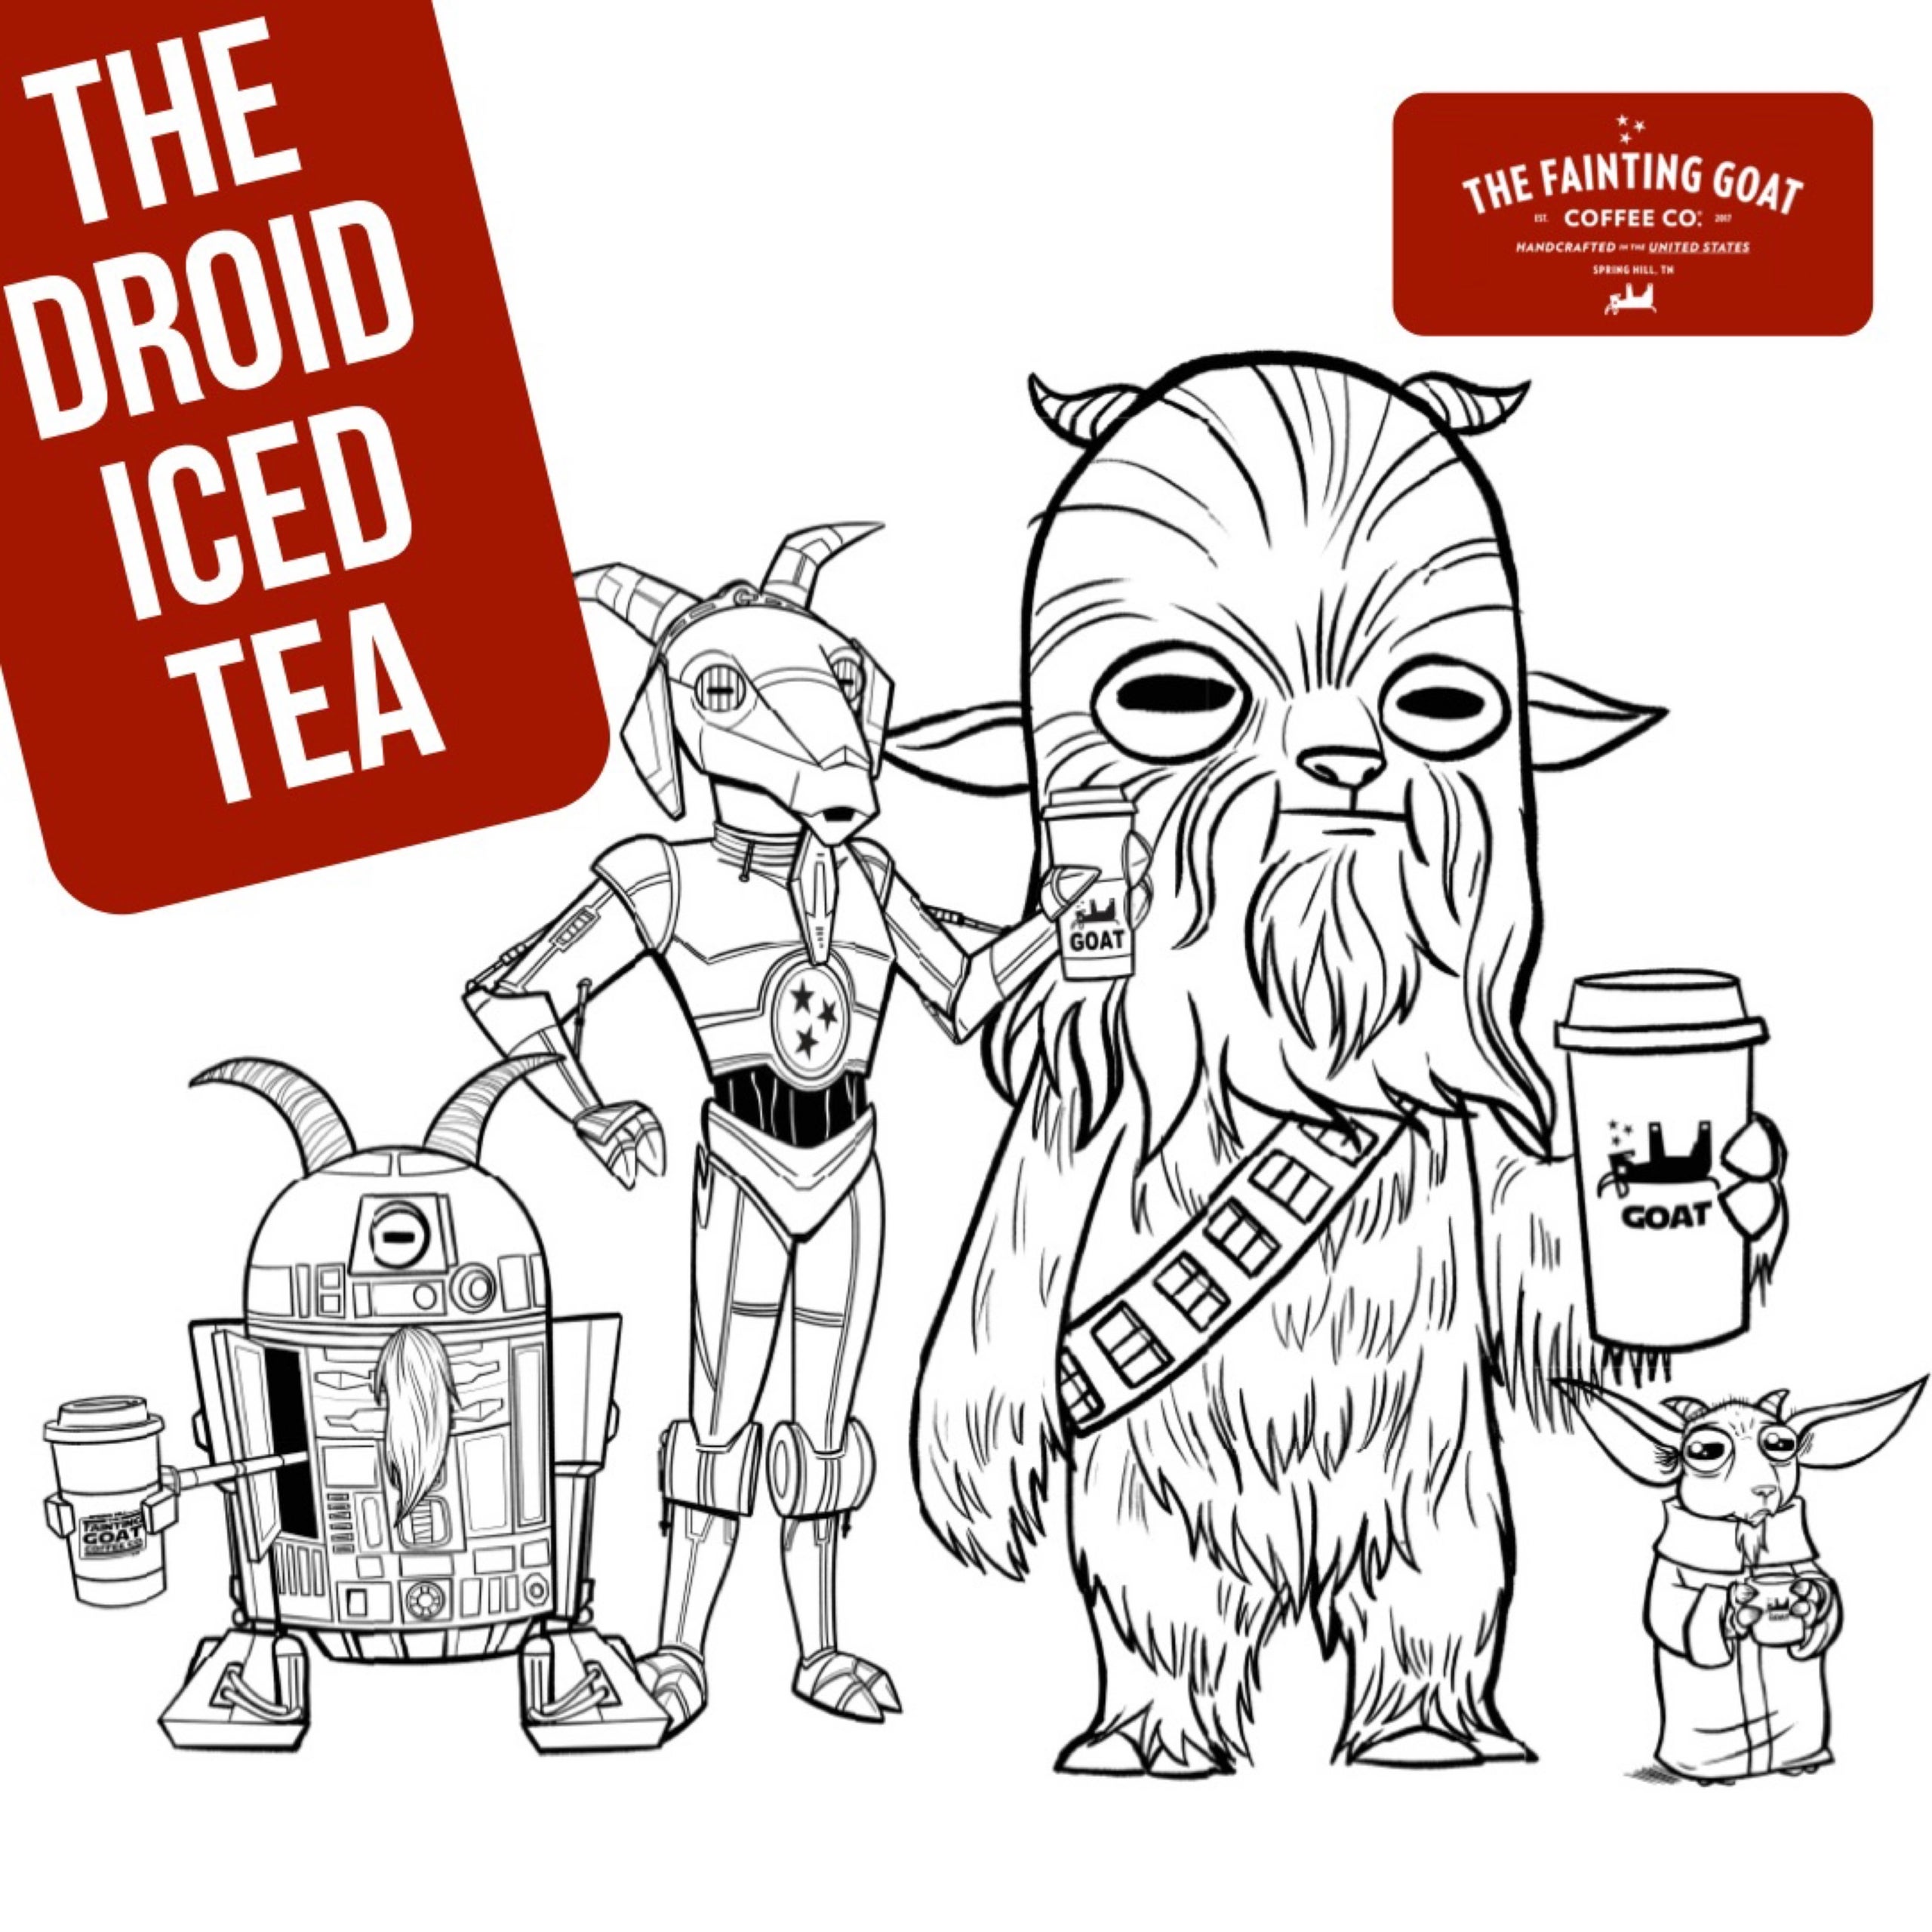 Iced Tea / The Droid | The Fainting Goat Coffee Co.